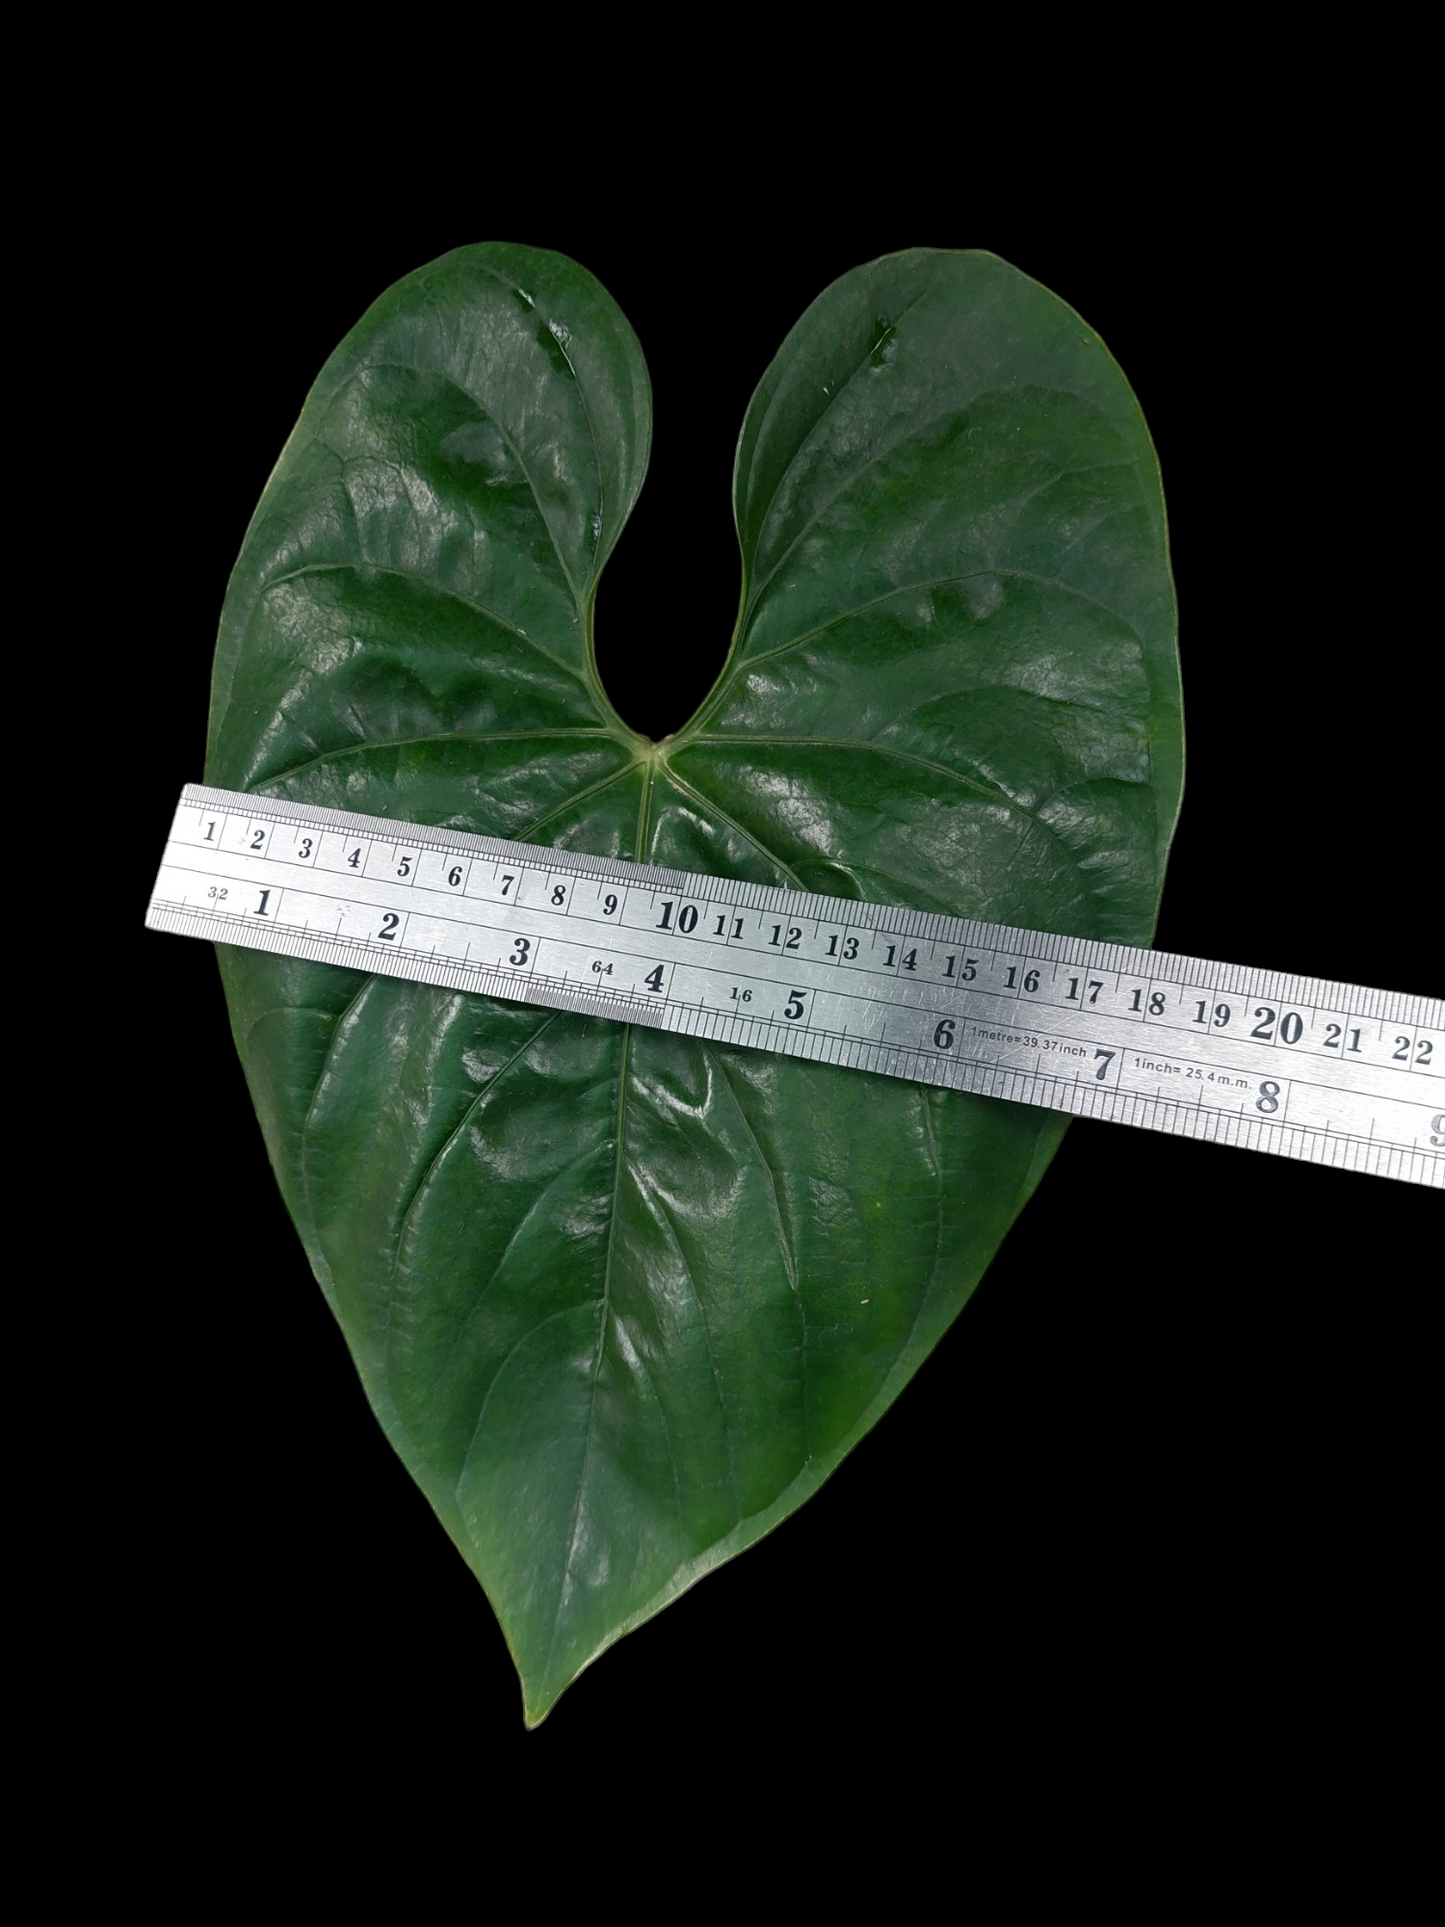 Anthurium sp. Iquitos (EXACT PLANT)